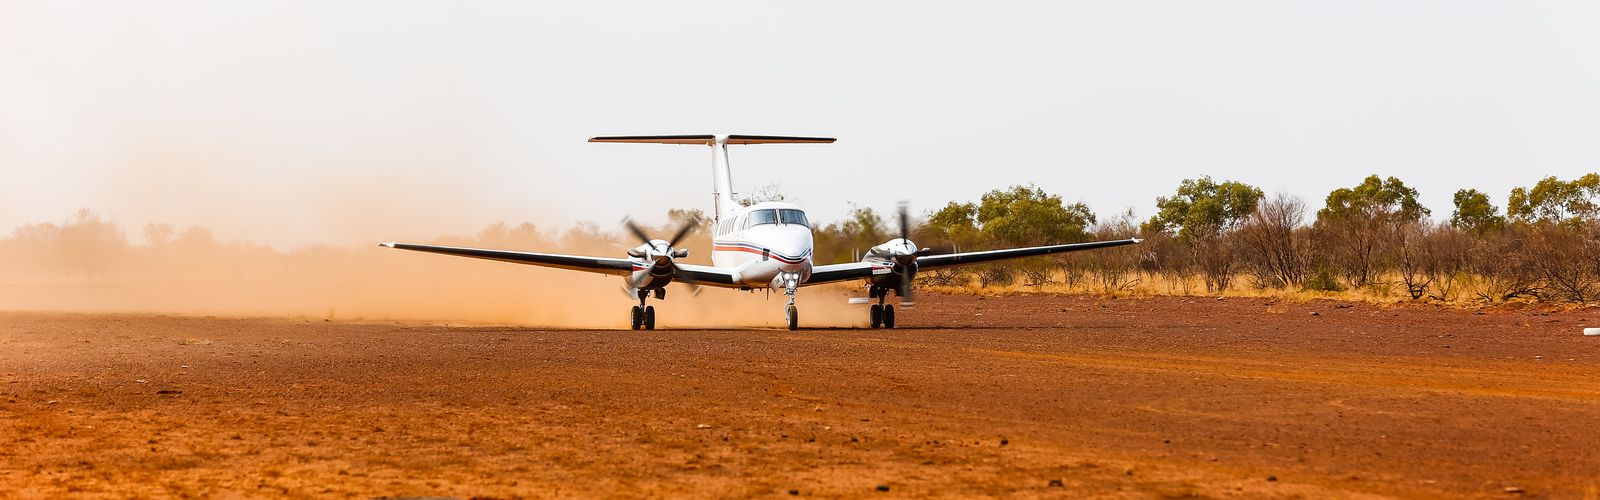 RFDS (Queensland Section) aircraft landing on dirt runway